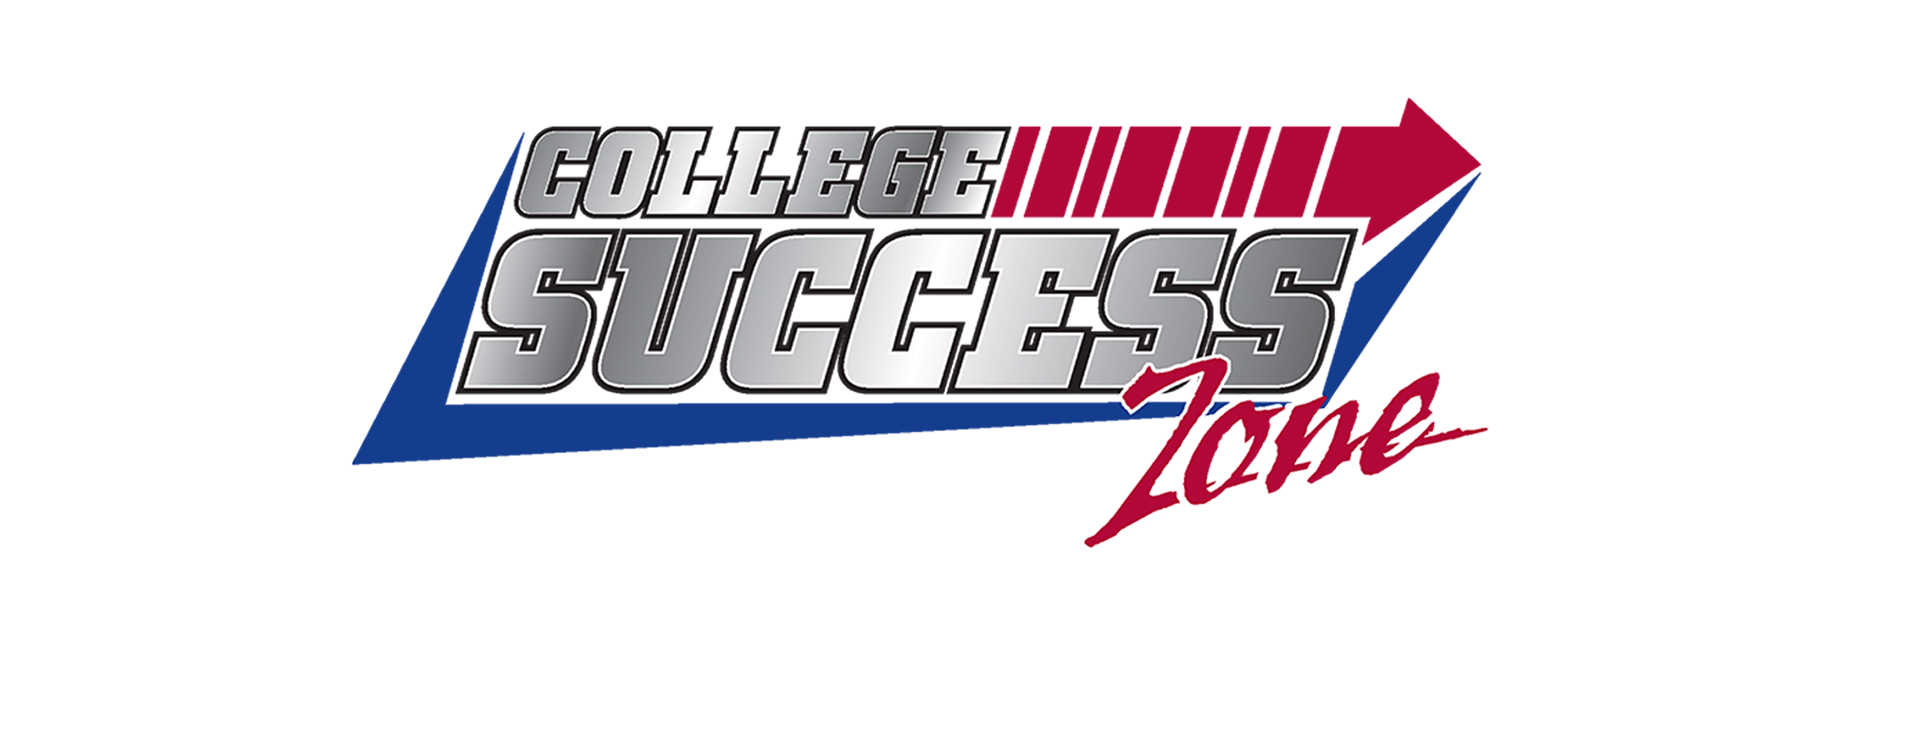 College Success Zone logo Vol State